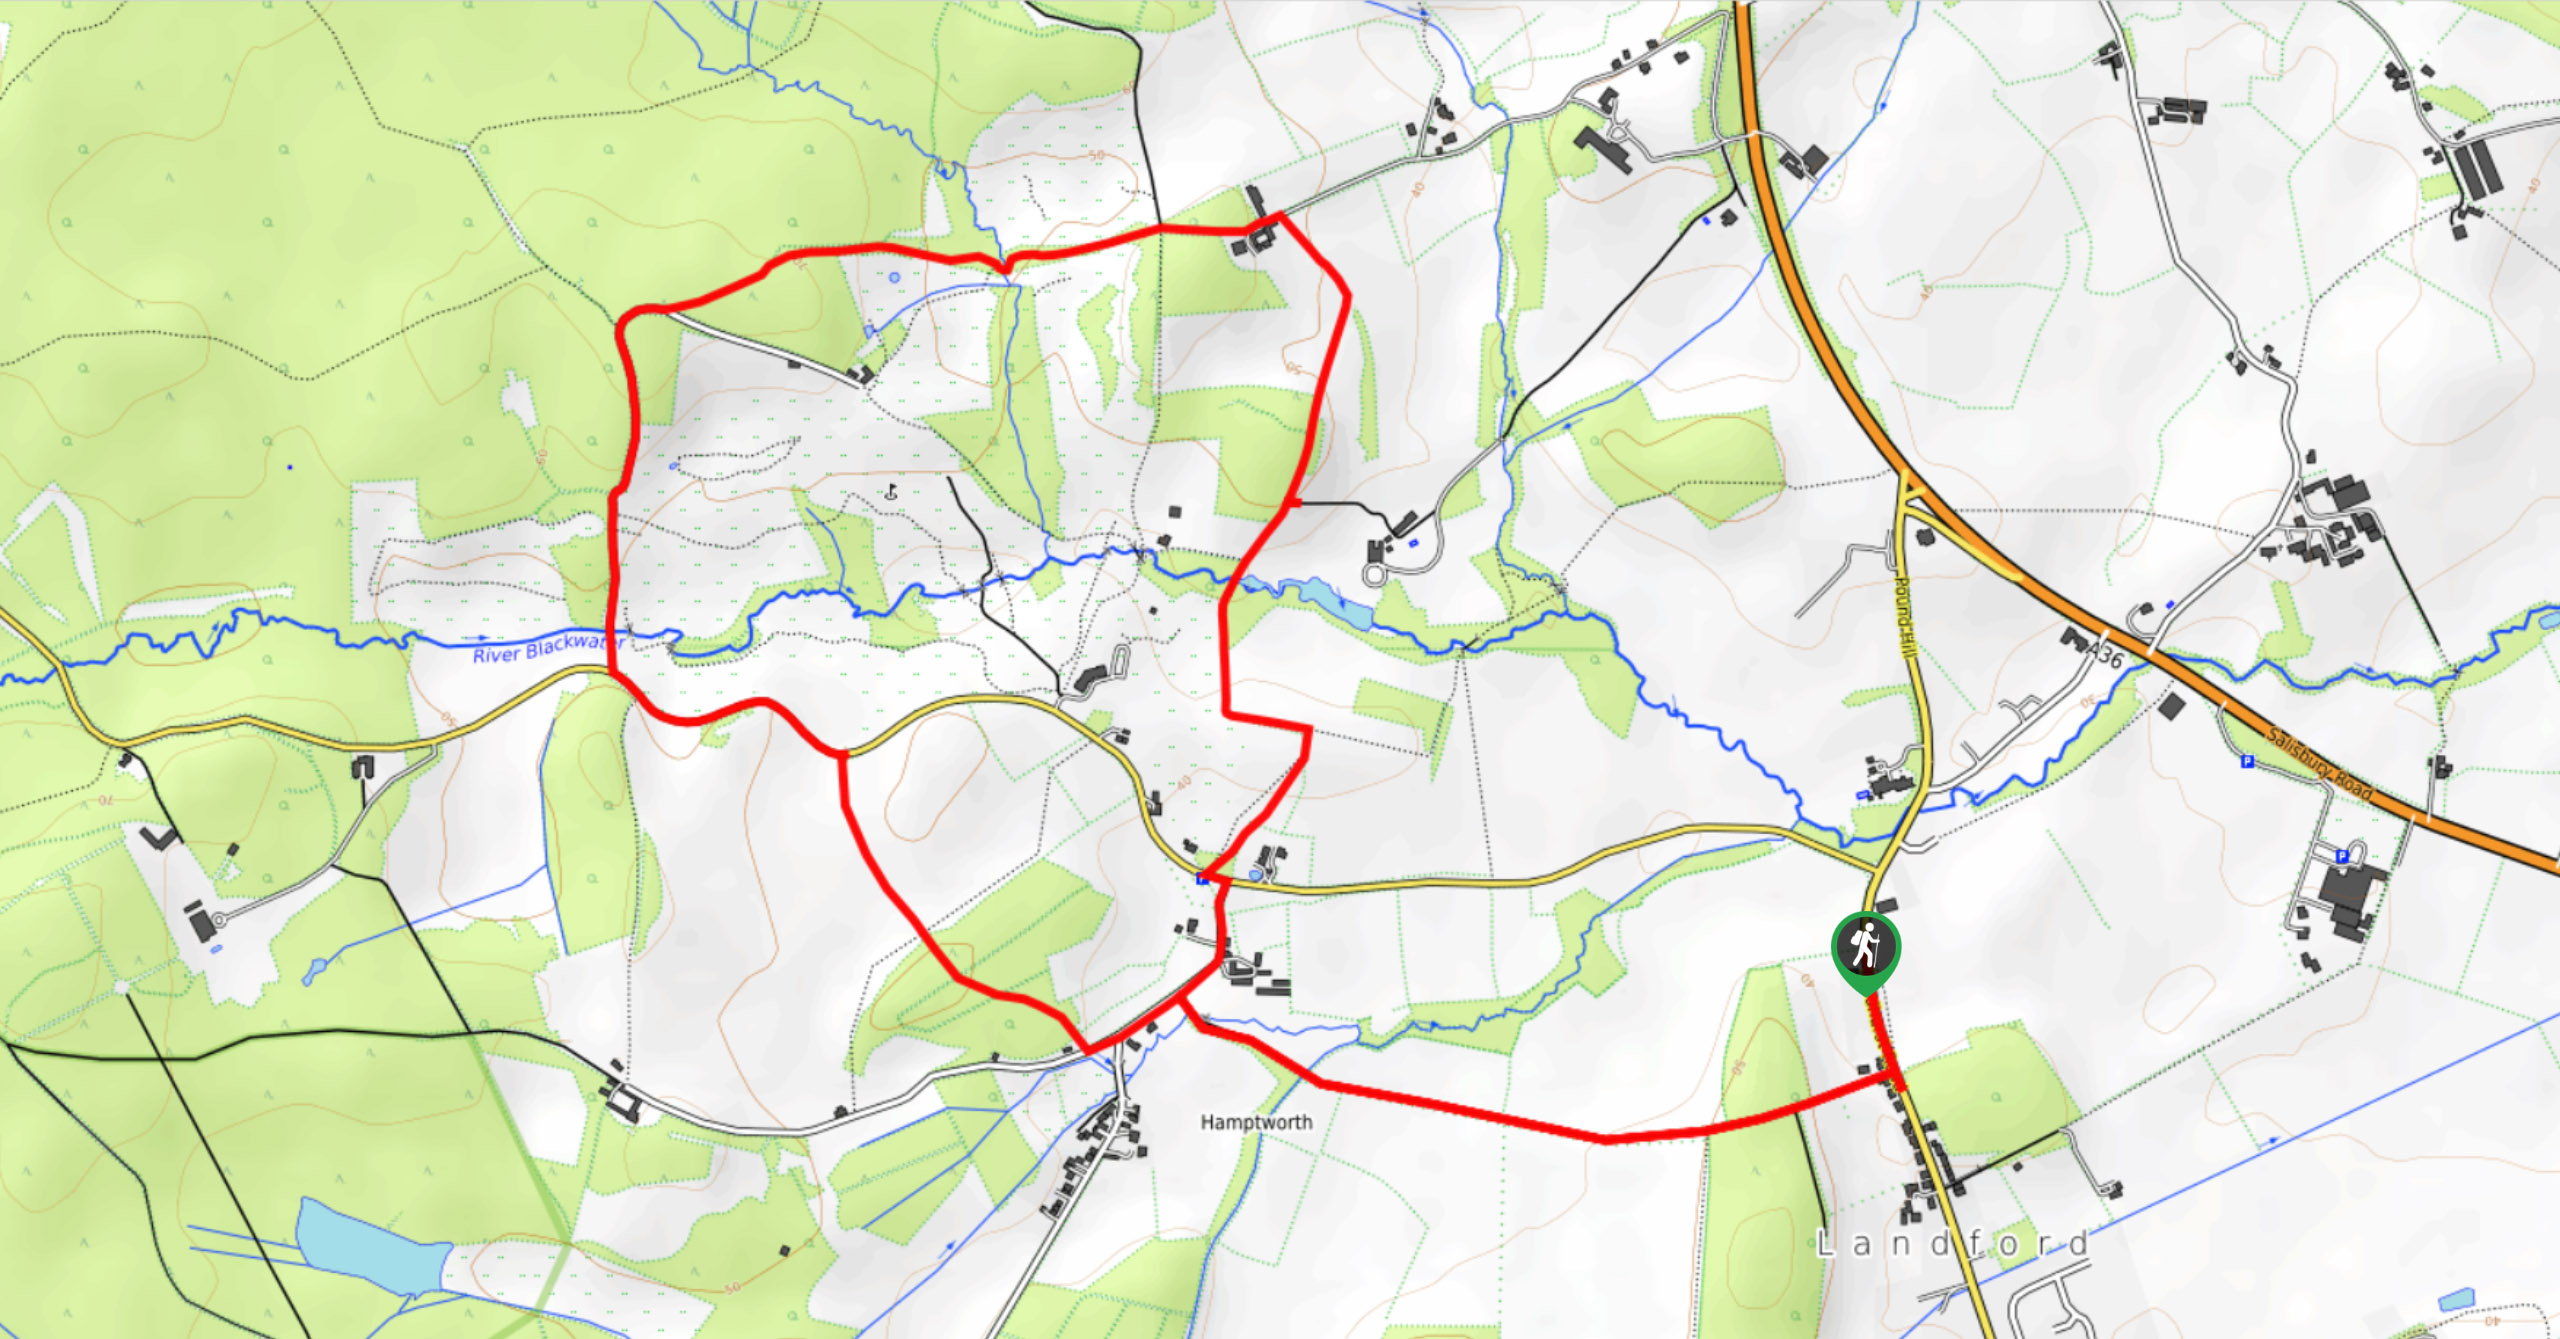 Landford and Hamptworth Walk Map